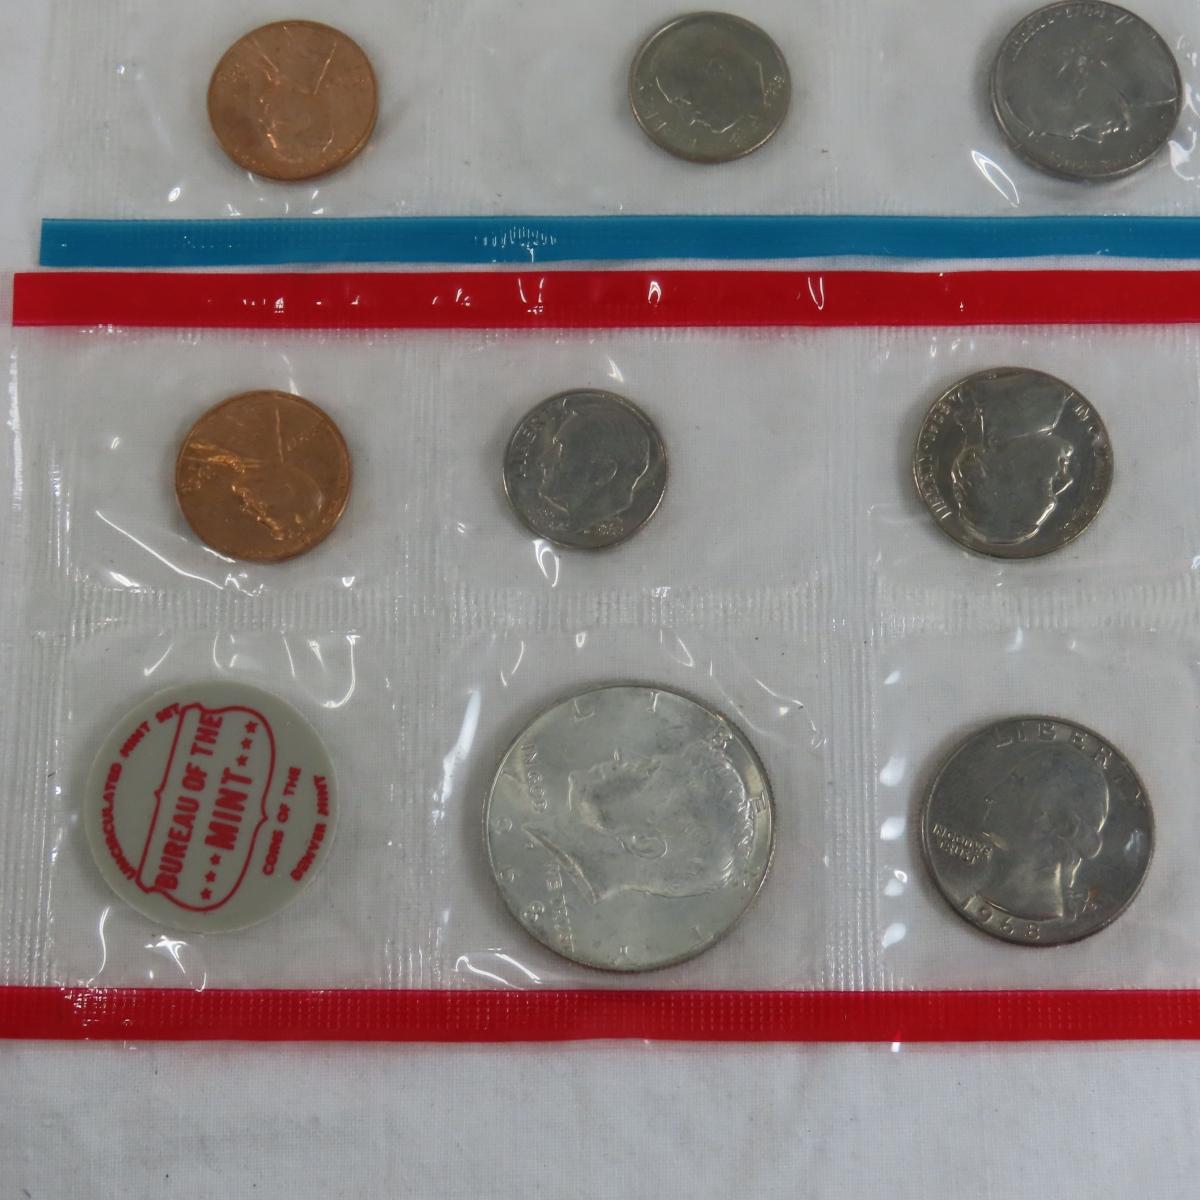 1968 & 1969 US Mint Sets in envelopes